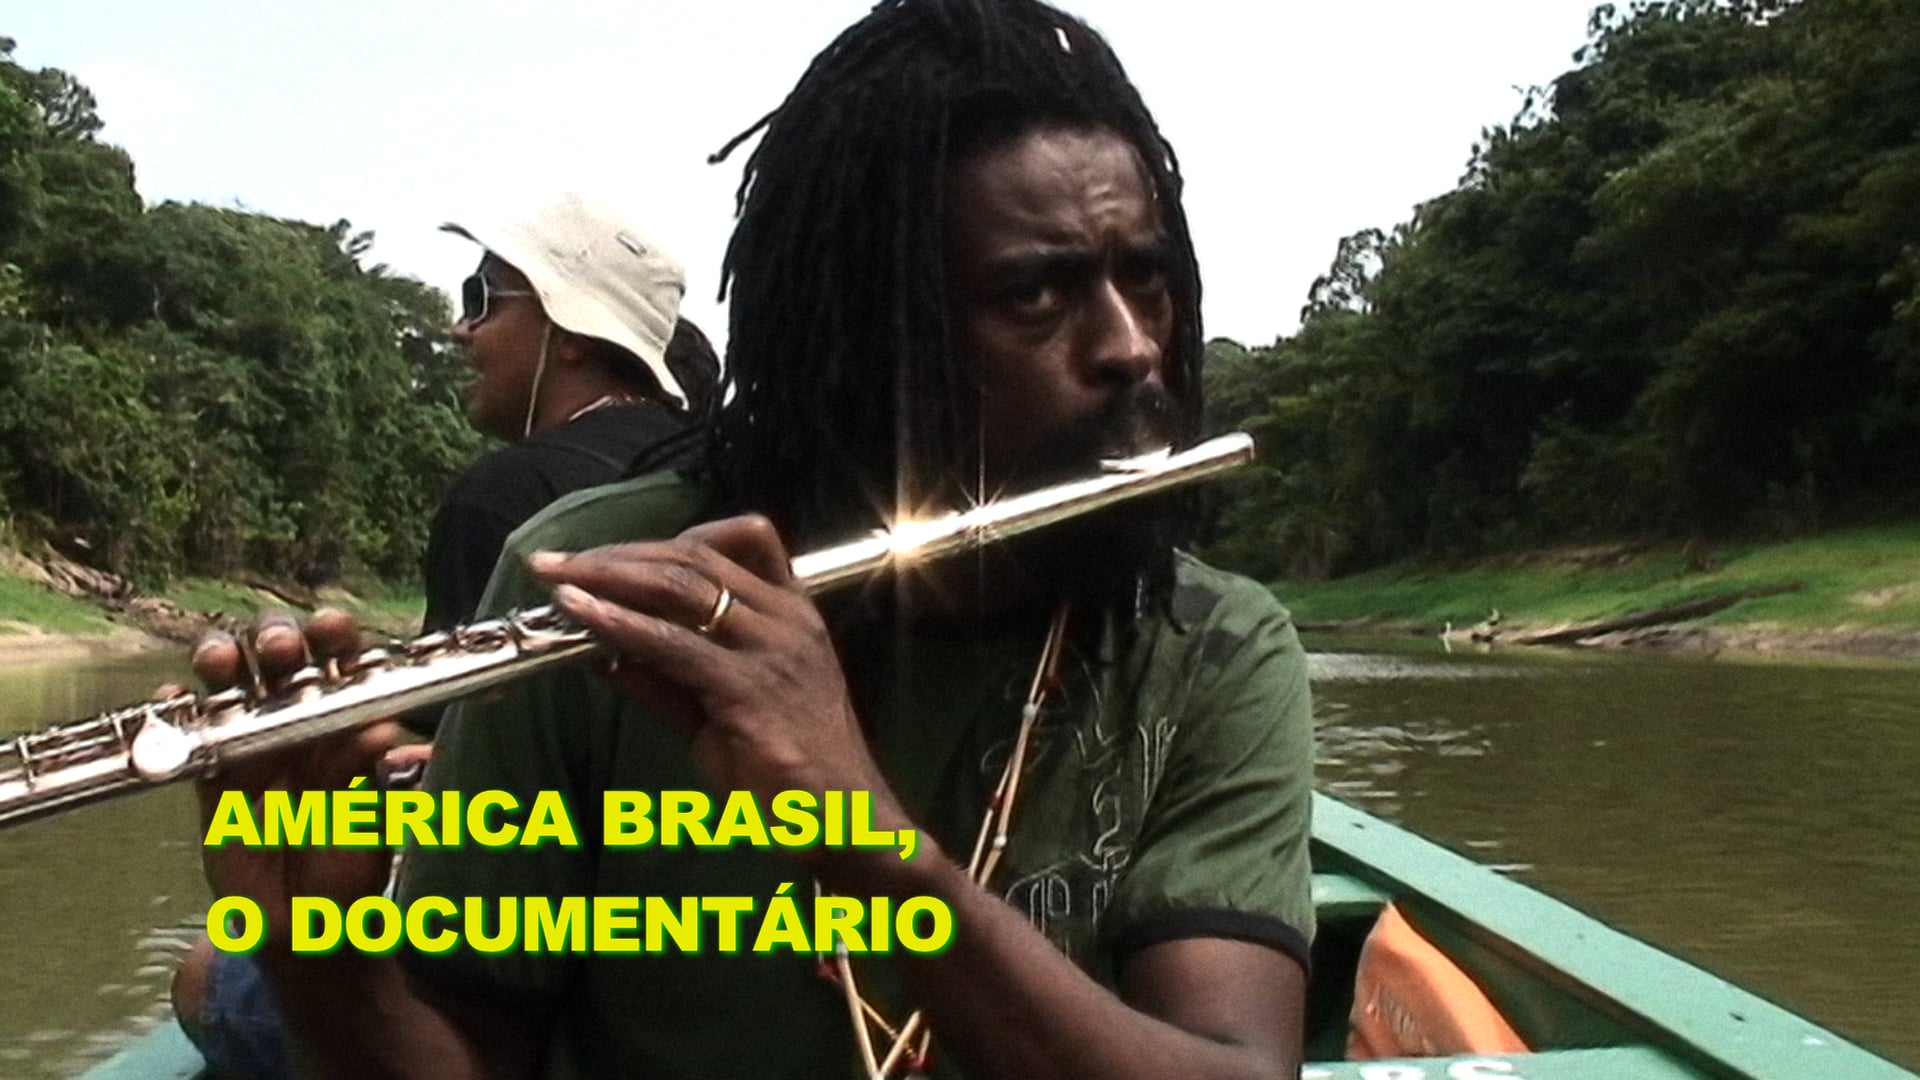 Seu Jorge: América Brasil, O Documentário (2010) - EMI Music